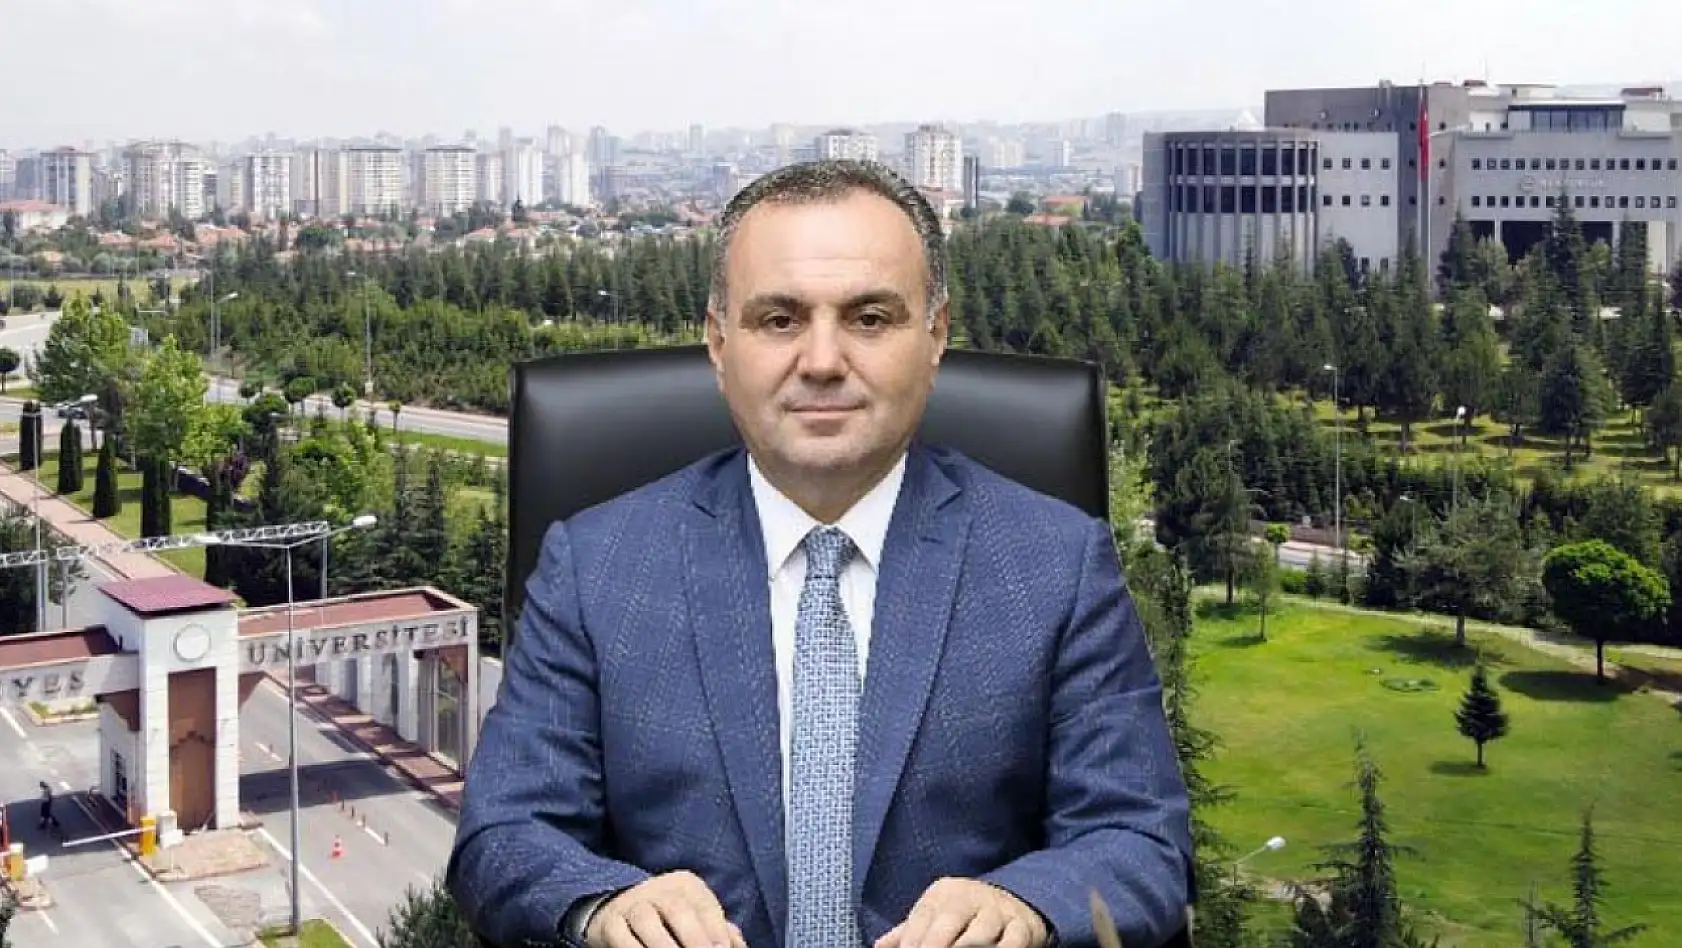 Sayıştay'dan, Erciyes Üniversitesi'ne özel muayene açan ve özelde çalışan profesörler uyarısı!